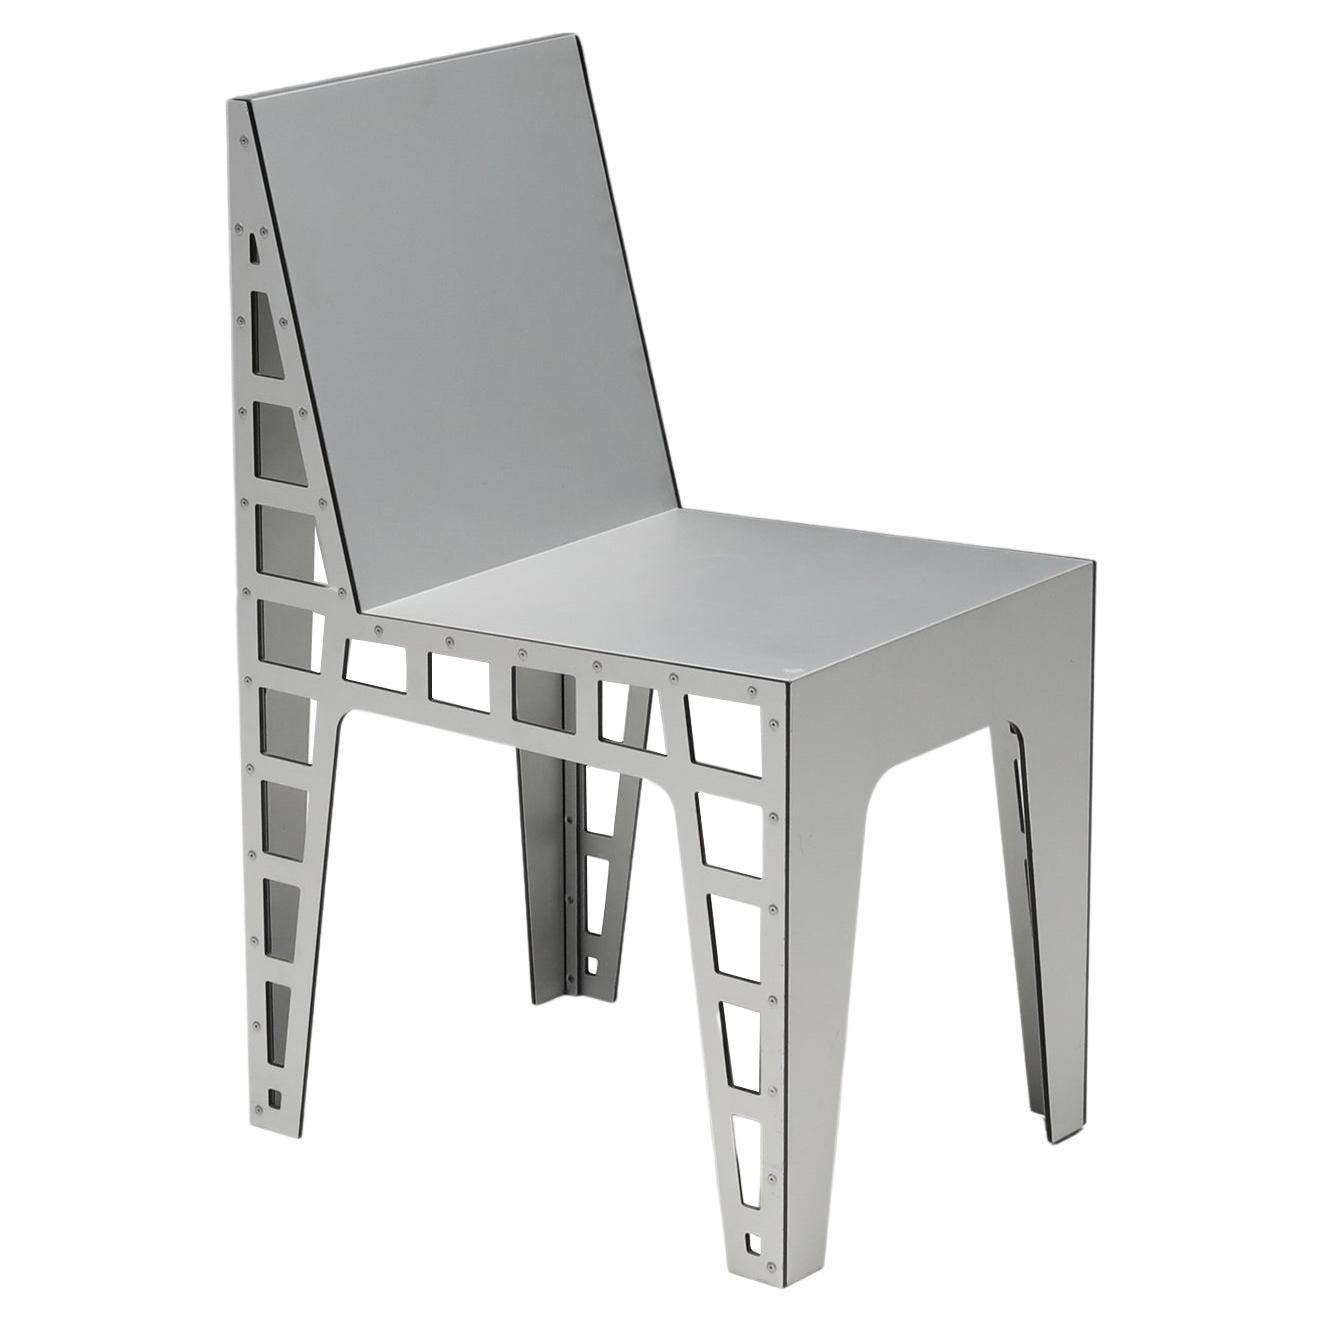 Richard Hutten Architectural Side Chair in Metal, Industrial, Dutch design, 1999